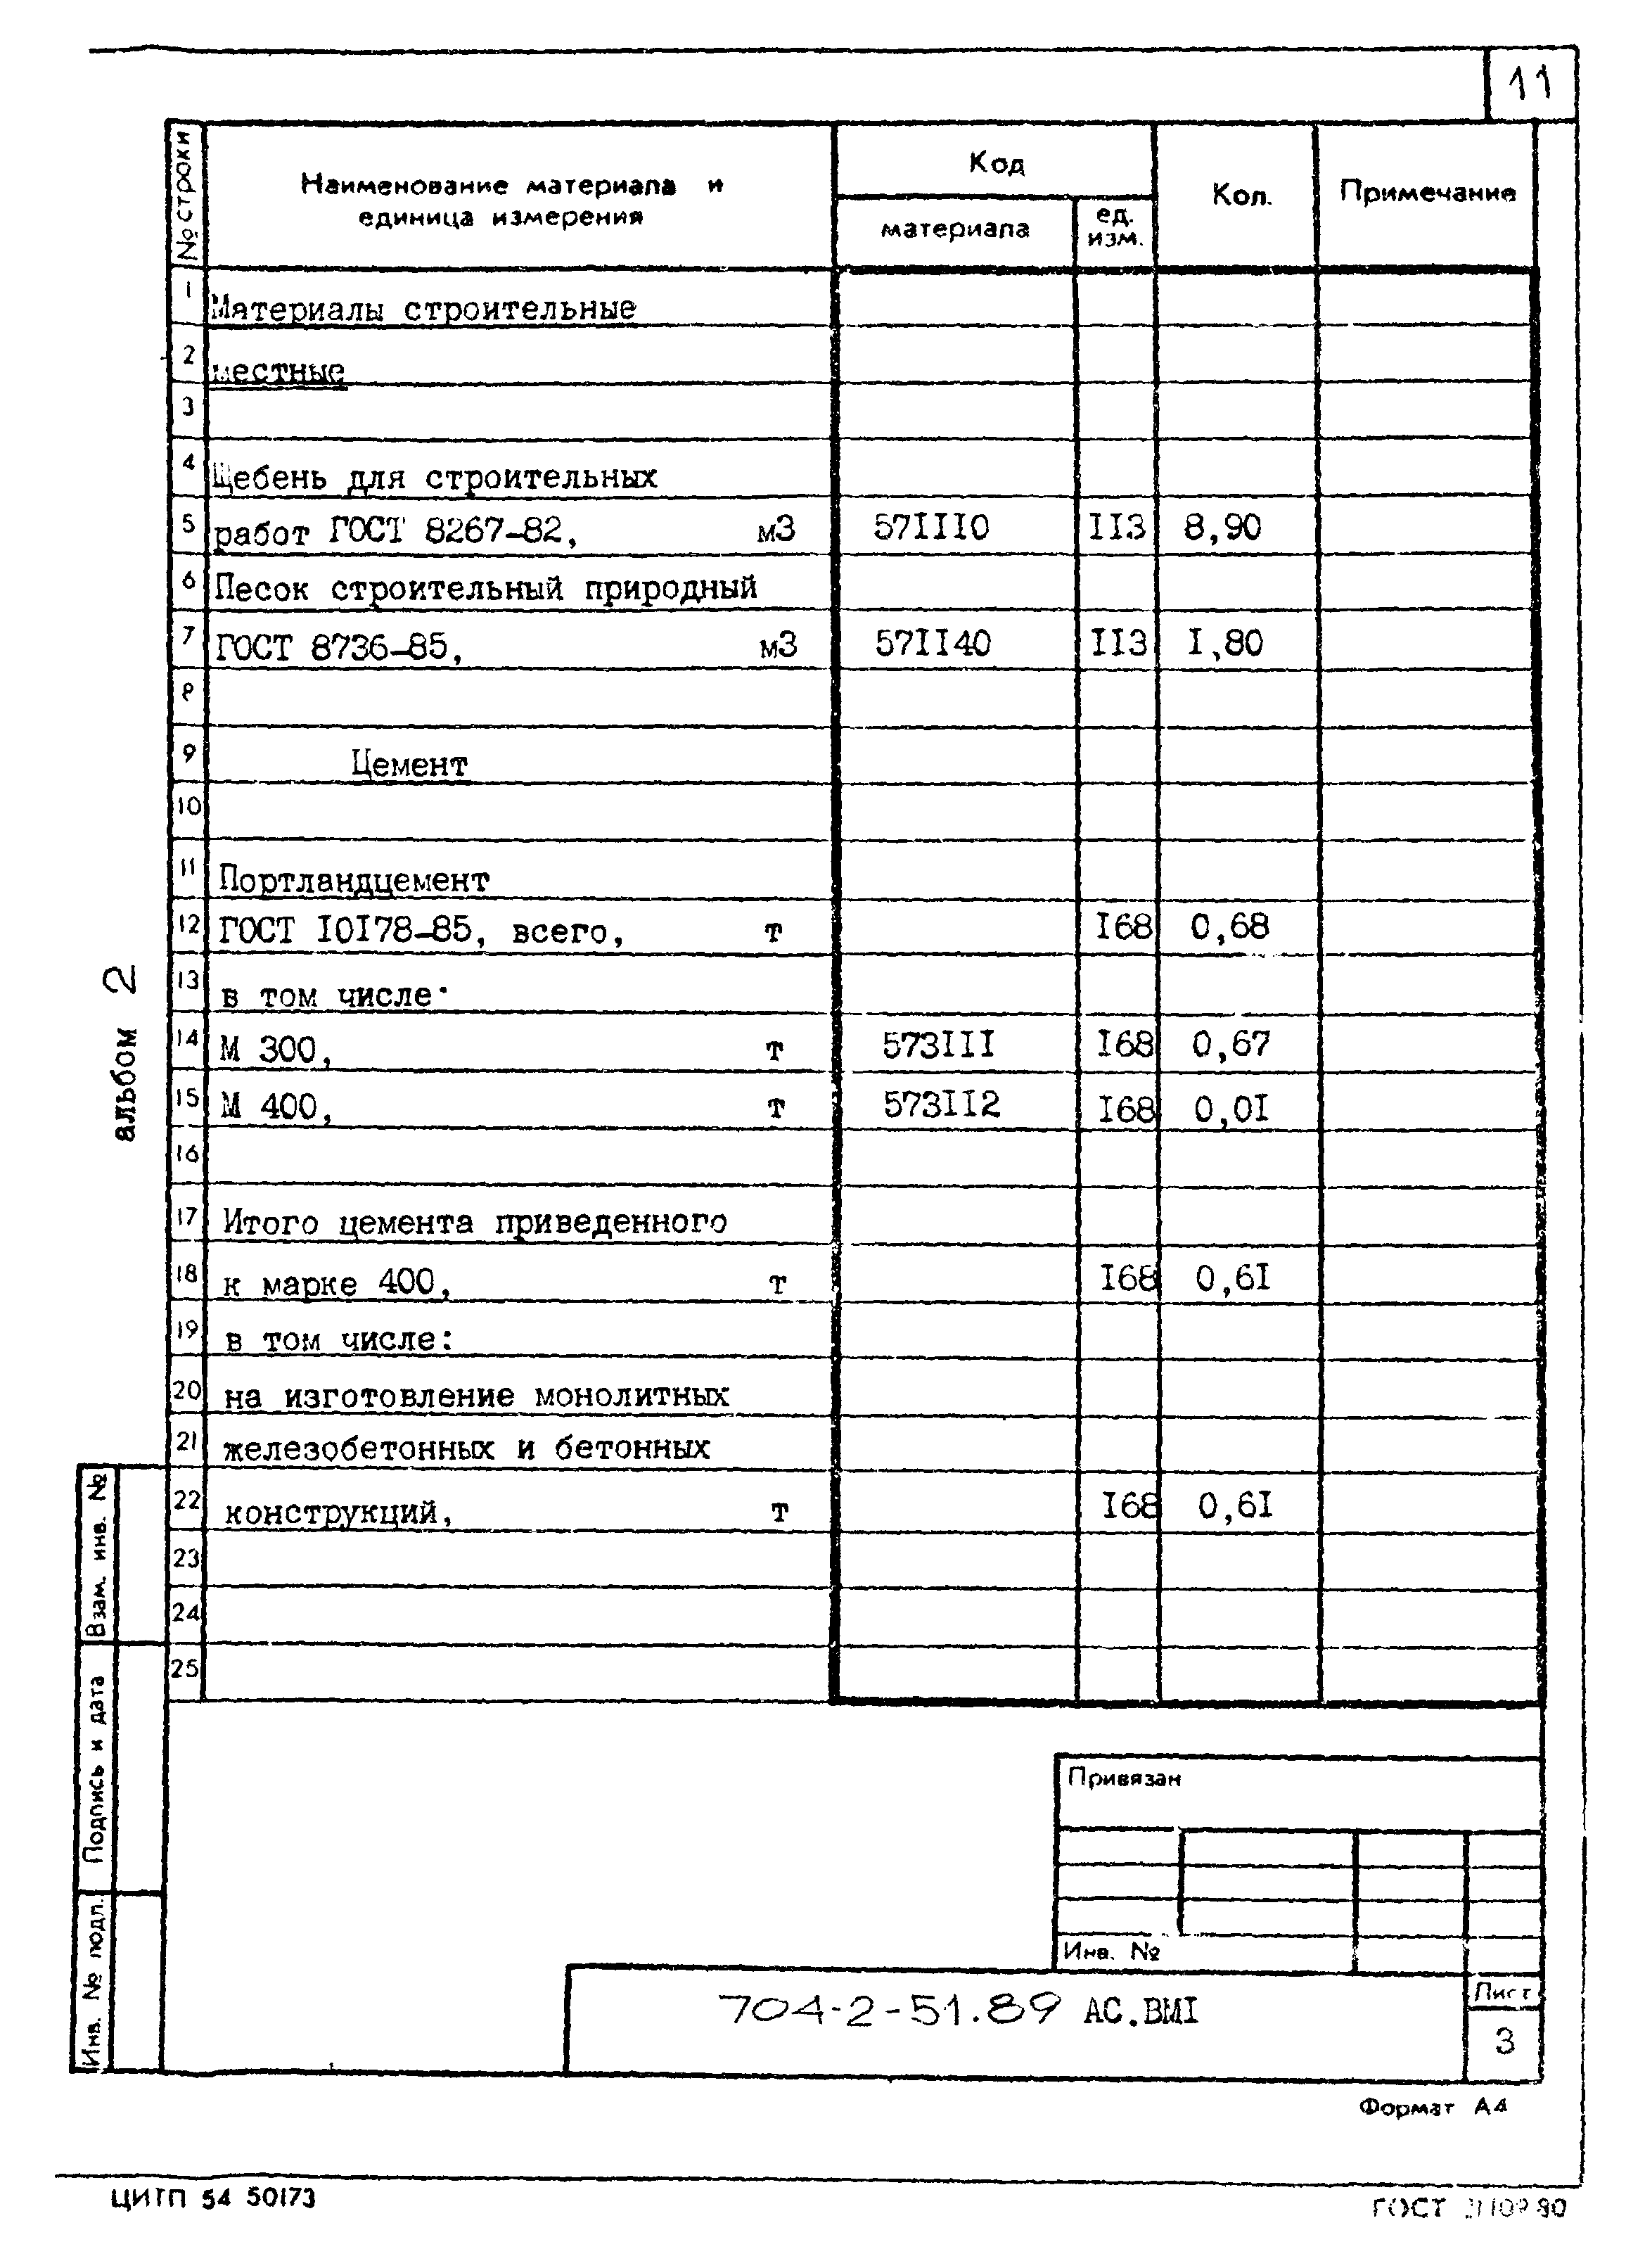 Типовой проект 704-2-51.89